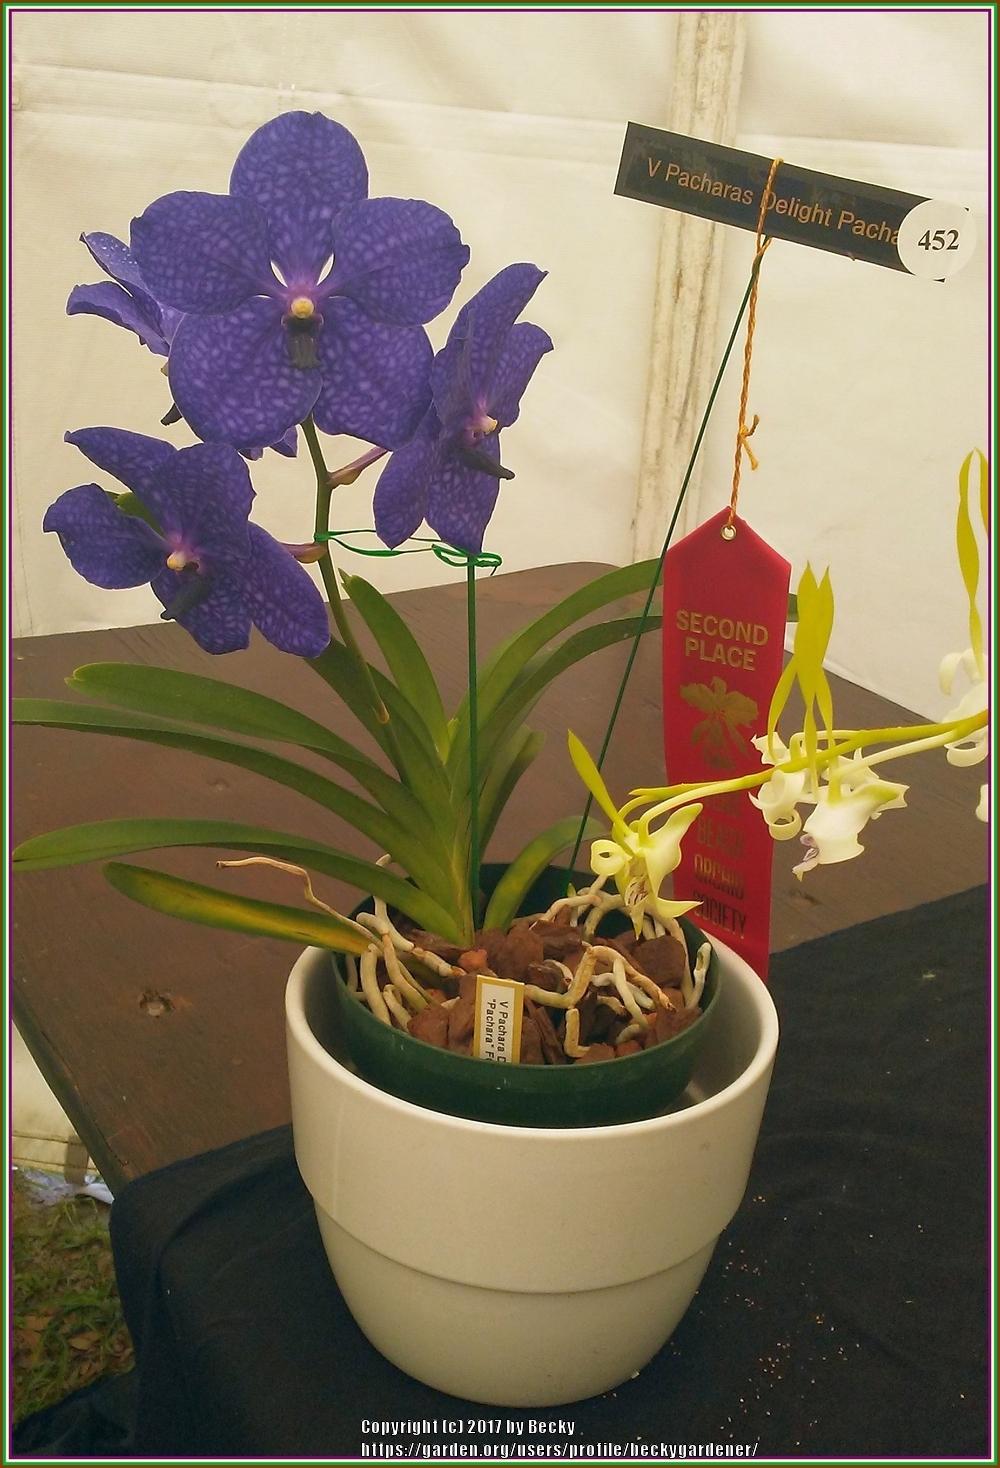 Photo of Orchid (Vanda Pachara Delight 'Pachara') uploaded by beckygardener